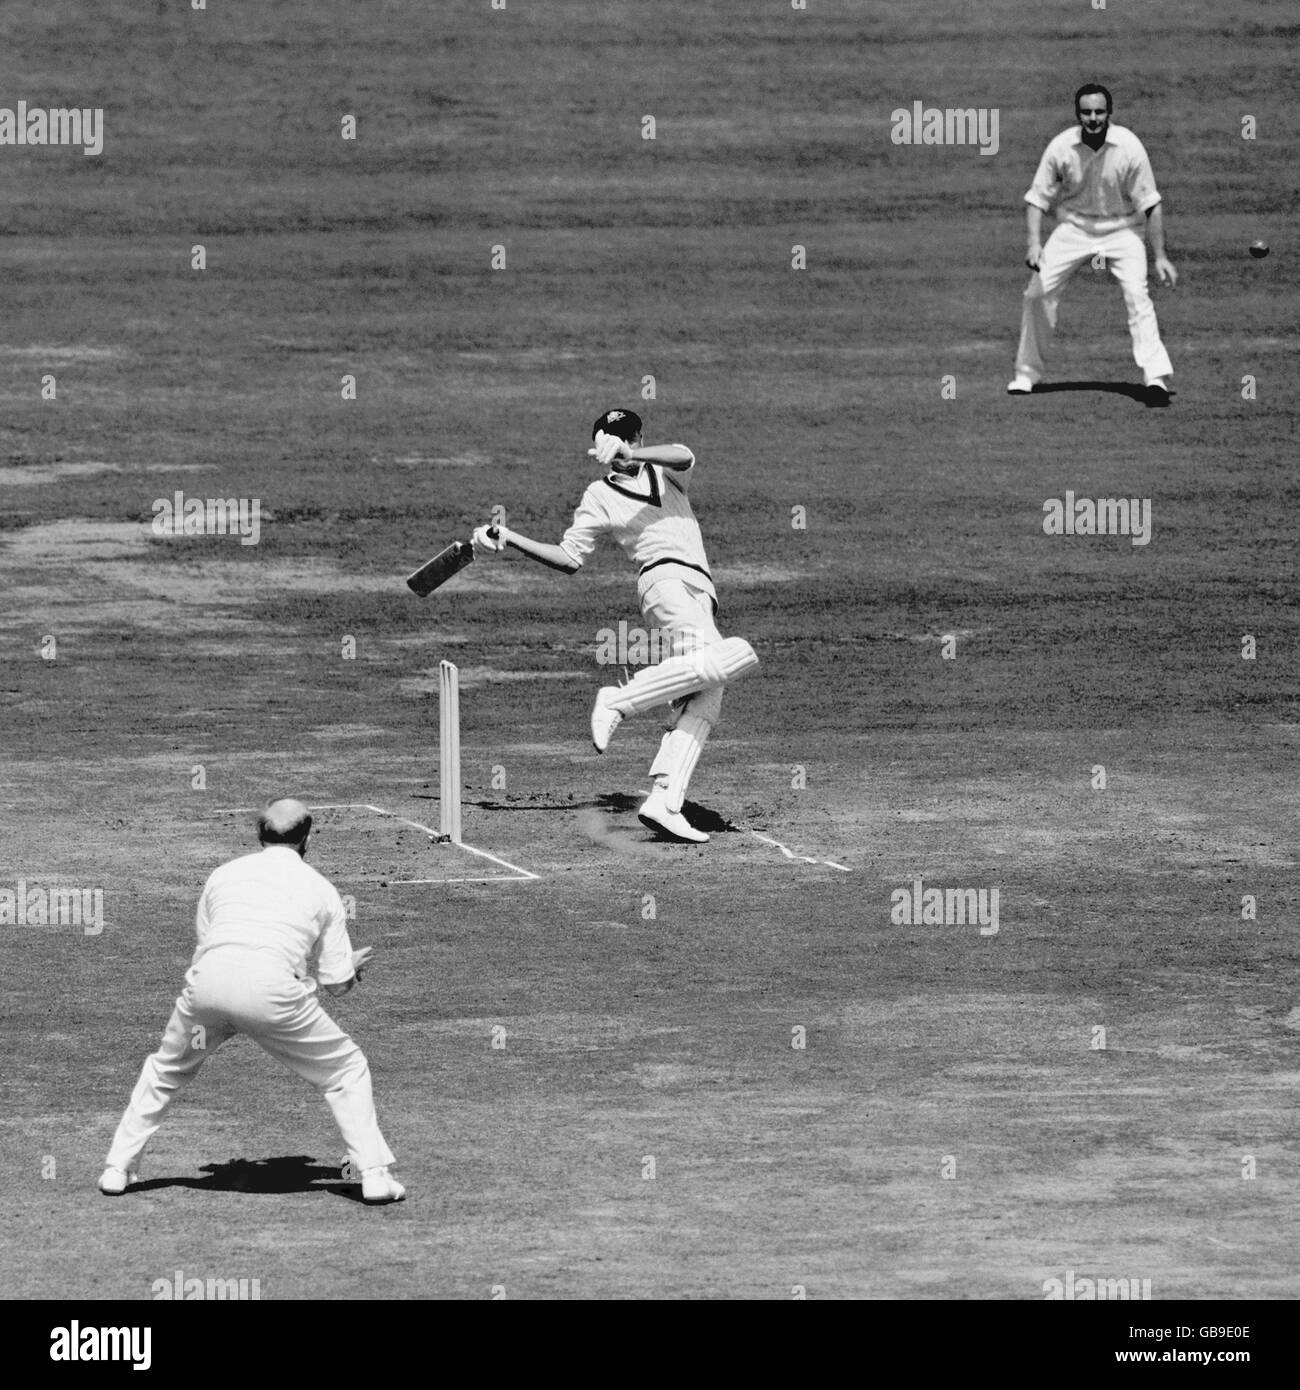 Cricket - The Ashes - seconda prova - Inghilterra / Australia - seconda giornata. L'Australia Bill Lawry (c) è colpito sul guanto da una consegna rapida Foto Stock